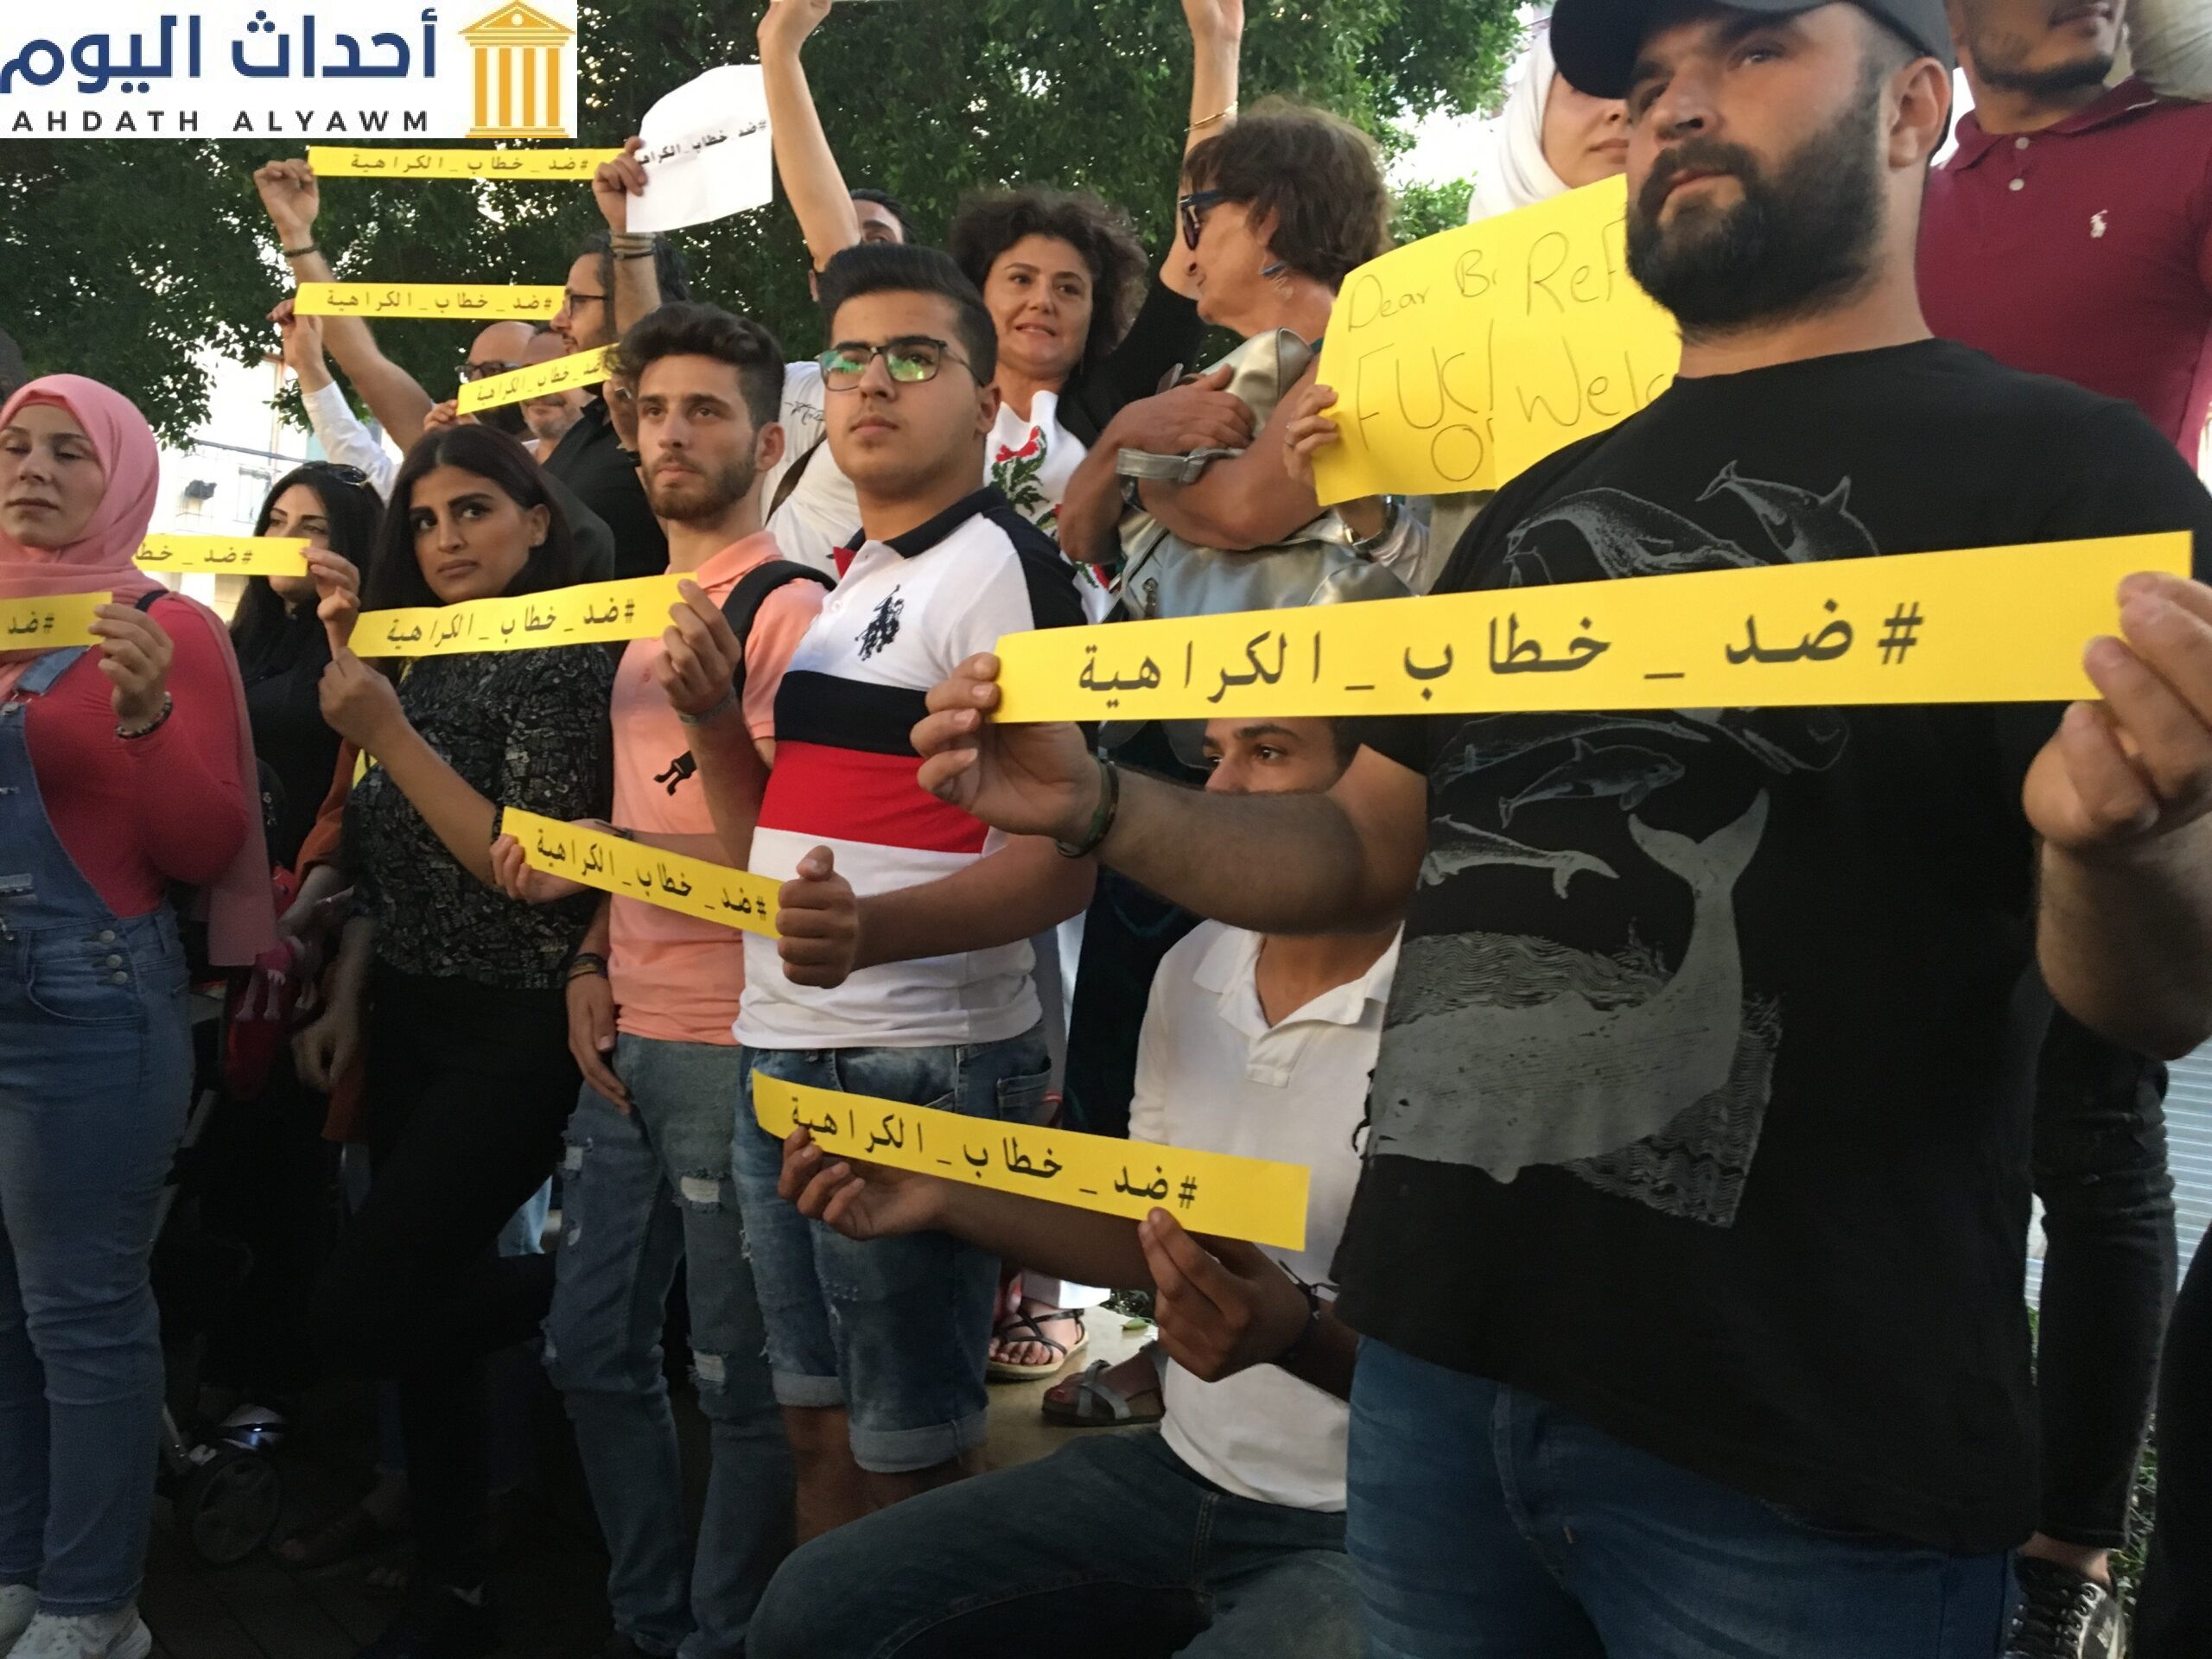 لبنان: تصاعد الاحتقان ضد اللاجئين السوريين لا سيما خطاب الكراهية ومطالبات الترحيل سيخلق أزمة غير محسوبة النتائج